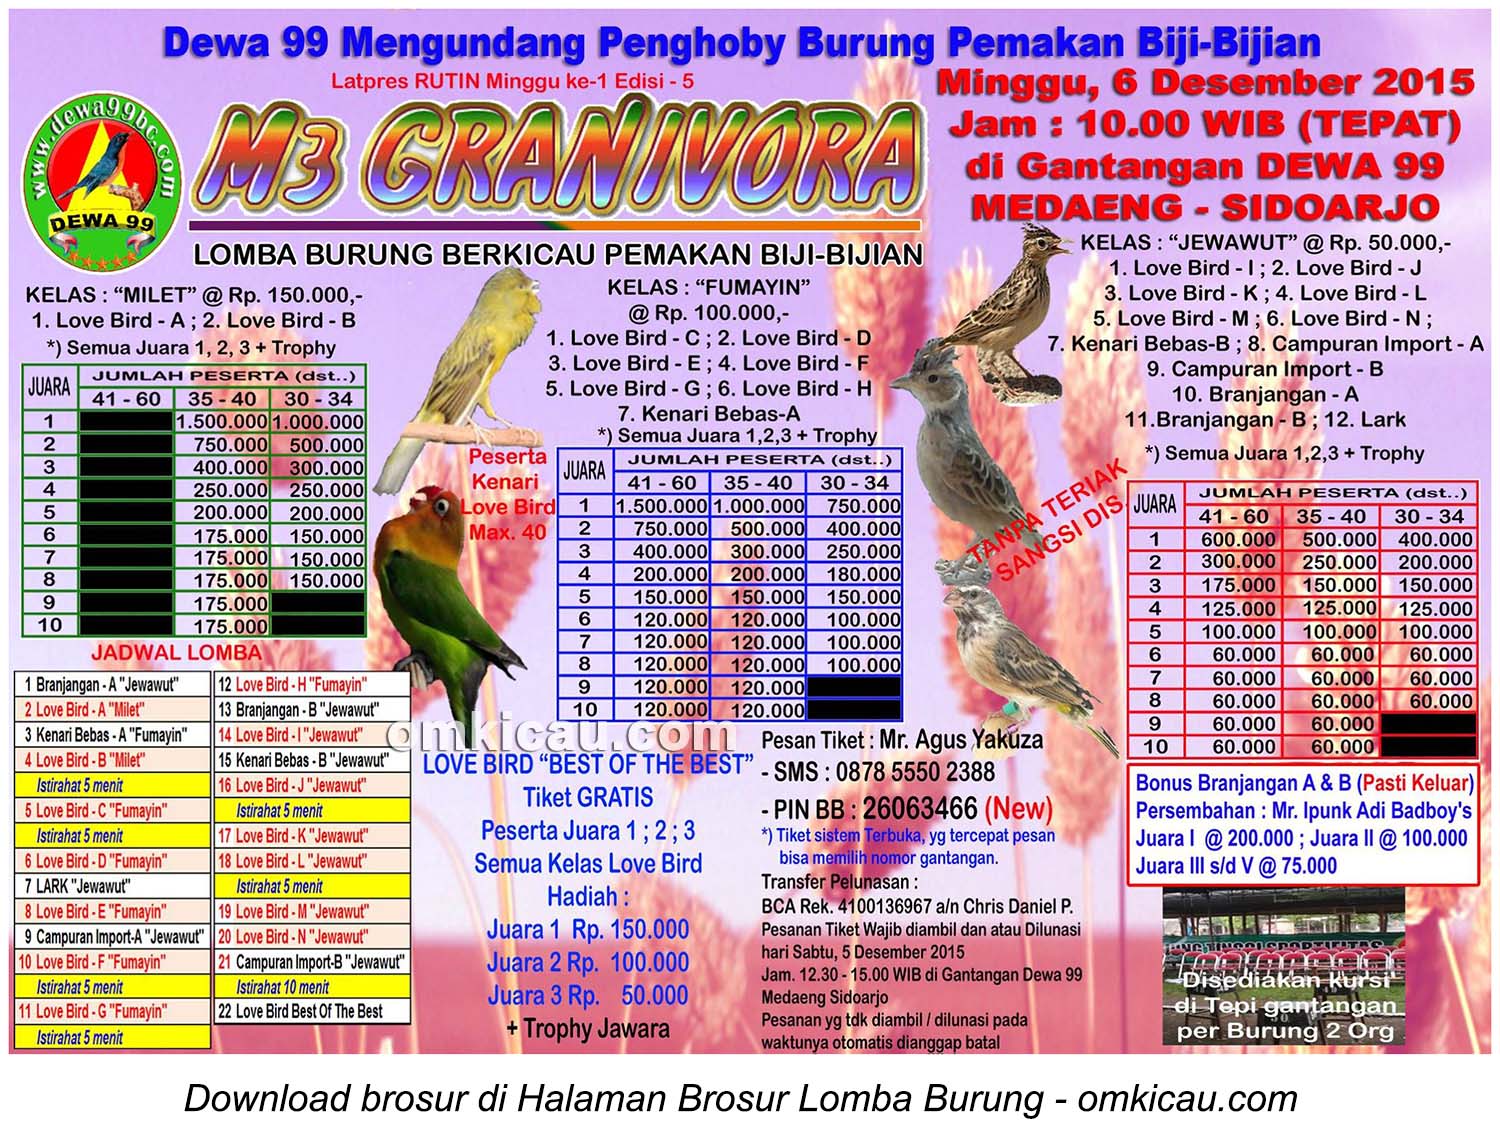 Brosur Lomba Burung Pemakan Bijian M3 Granivora, Sidoarjo, 6 Desember 2015